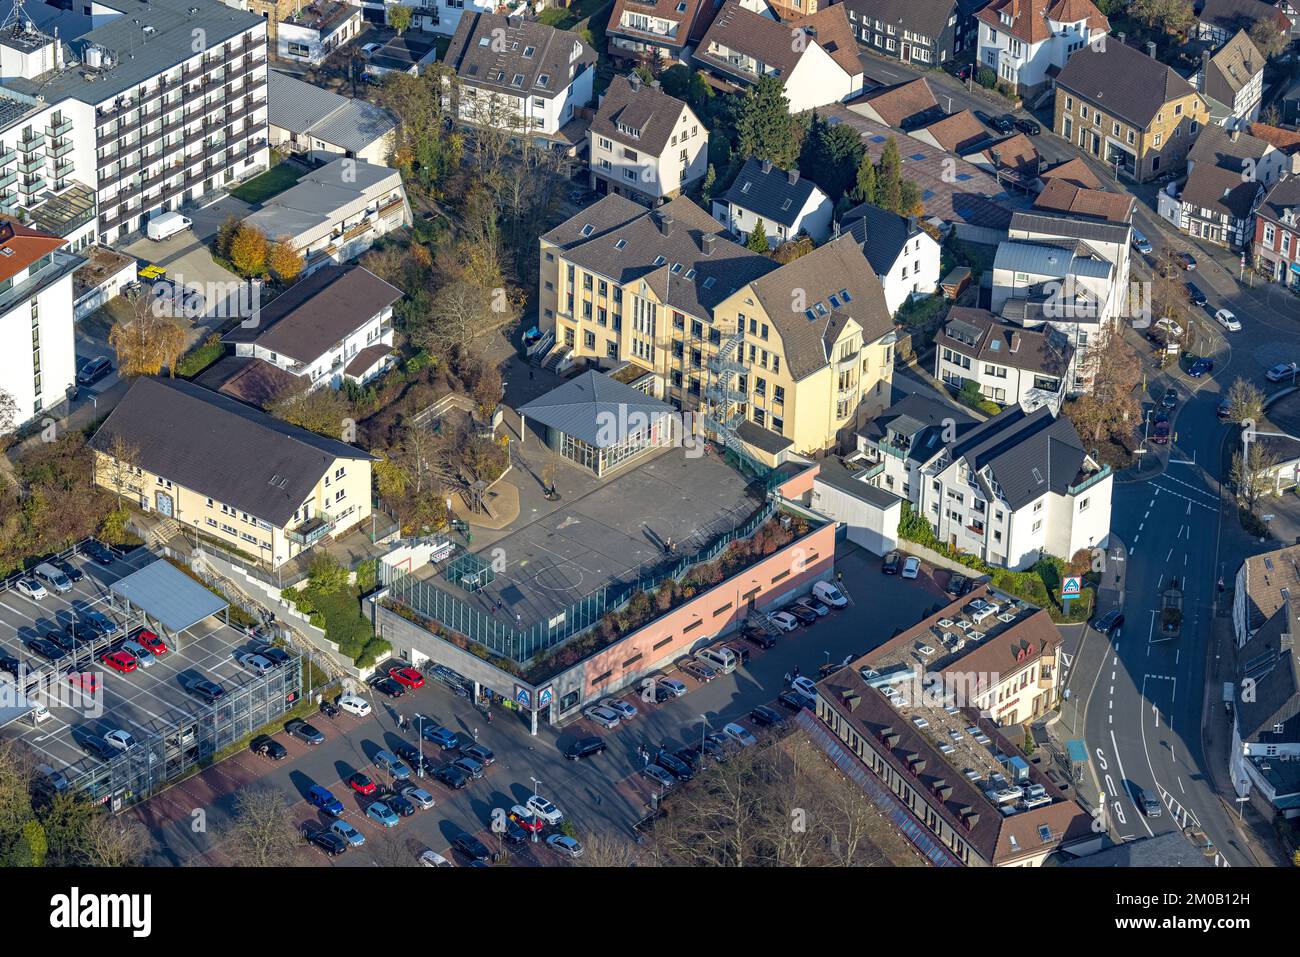 Luftbild, Spielfläche auf einem Aldi Supermarkt in der Stiftsstraße in Herdecke, Ruhrgebiet, Nordrhein-Westfalen, Deutschland, Aldi Supermarkt, DE, EI Banque D'Images